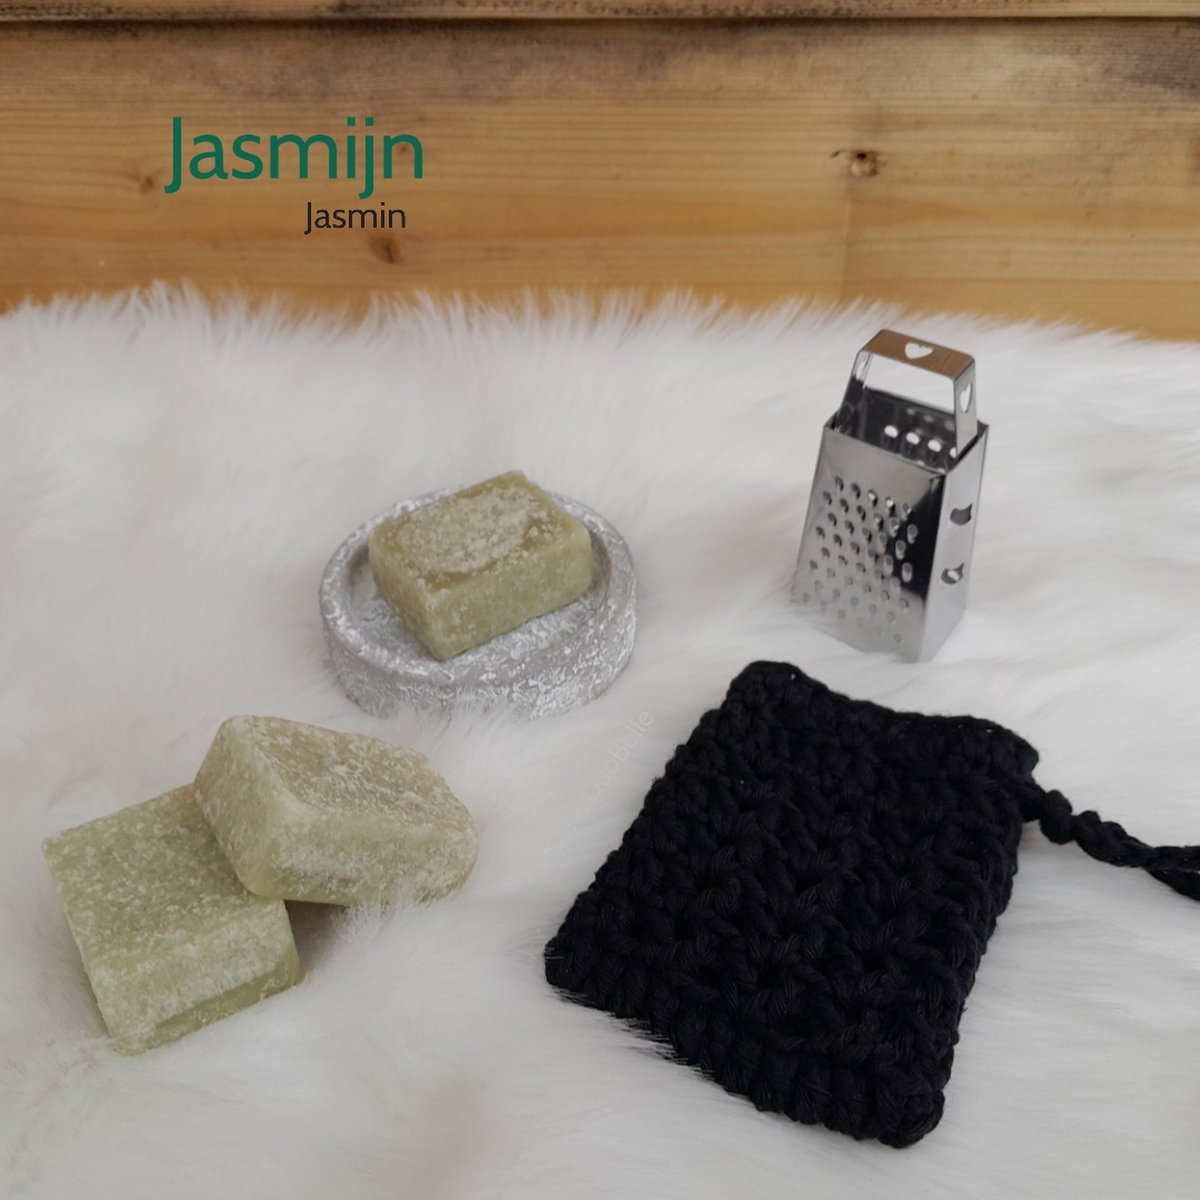 3 Amberblokjes Jasmijn - Geurblokjes Set met Schaaltje, Rasp en Gehaakt Geurzakje - Giftset